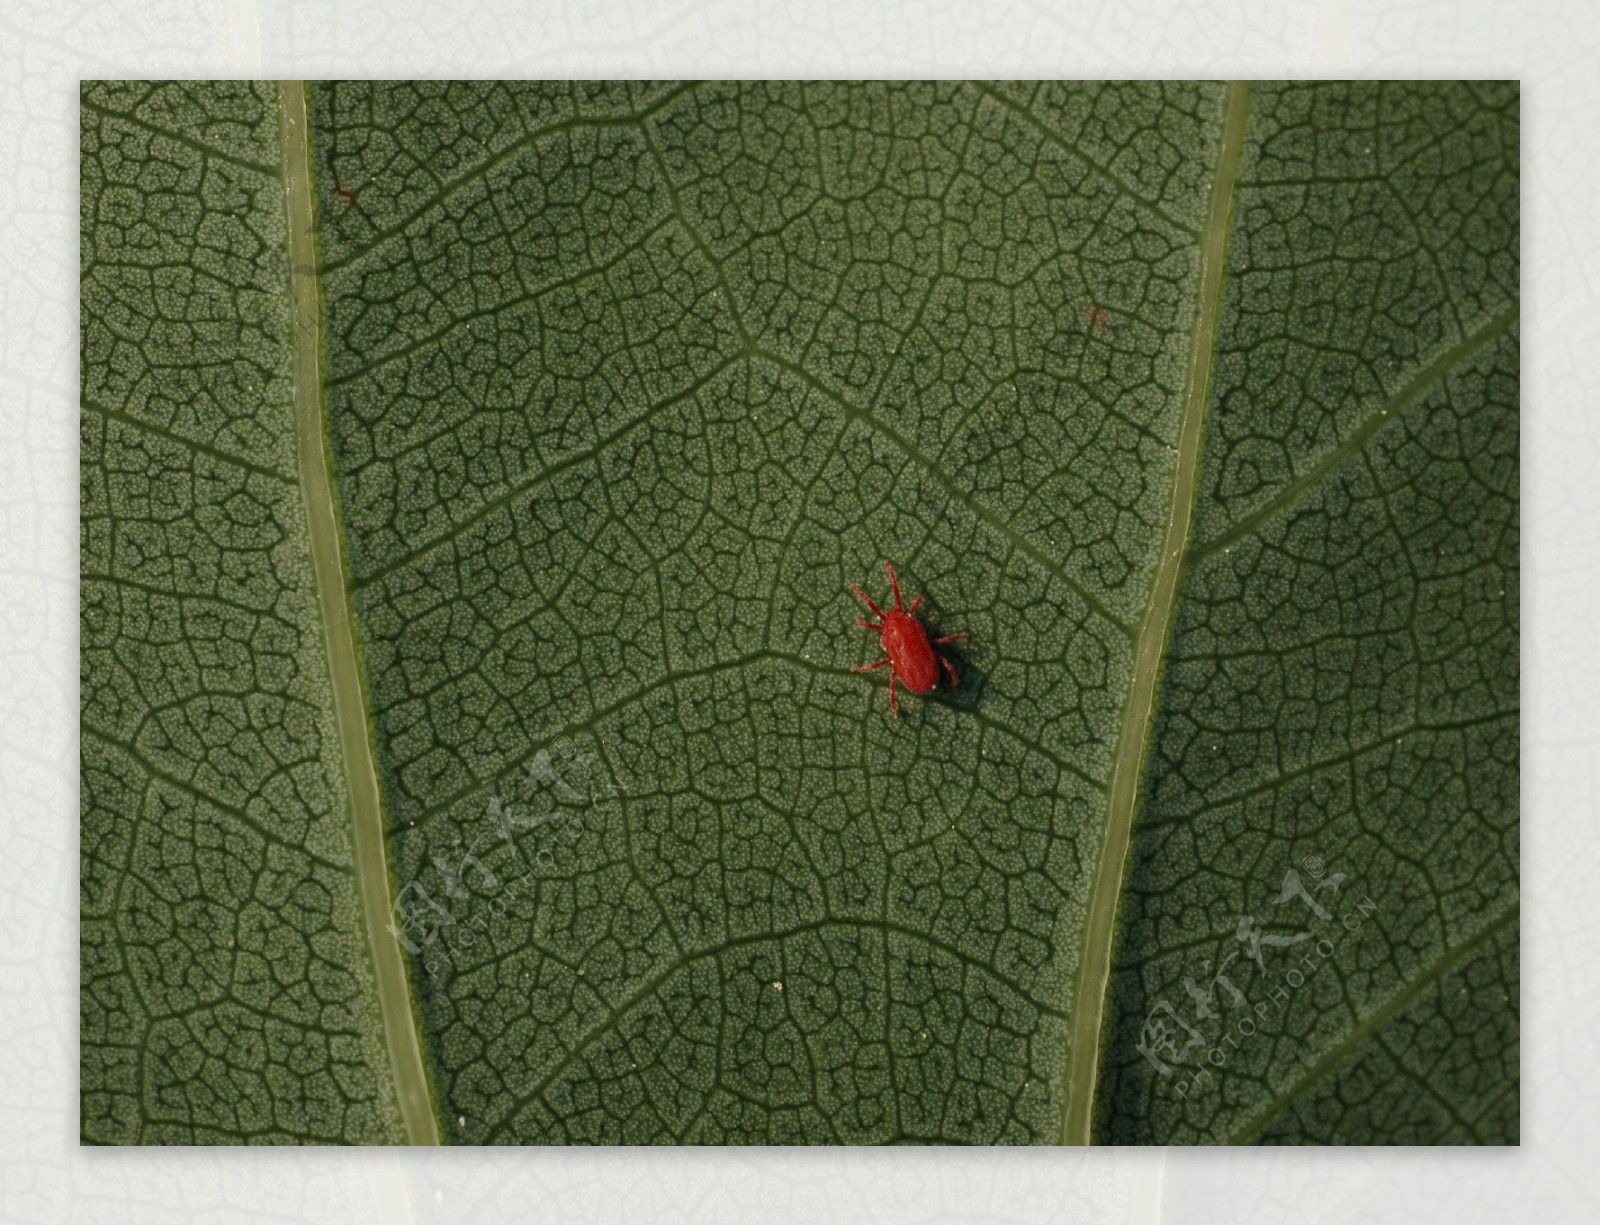 郁金香叶子上的红蜘蛛图片